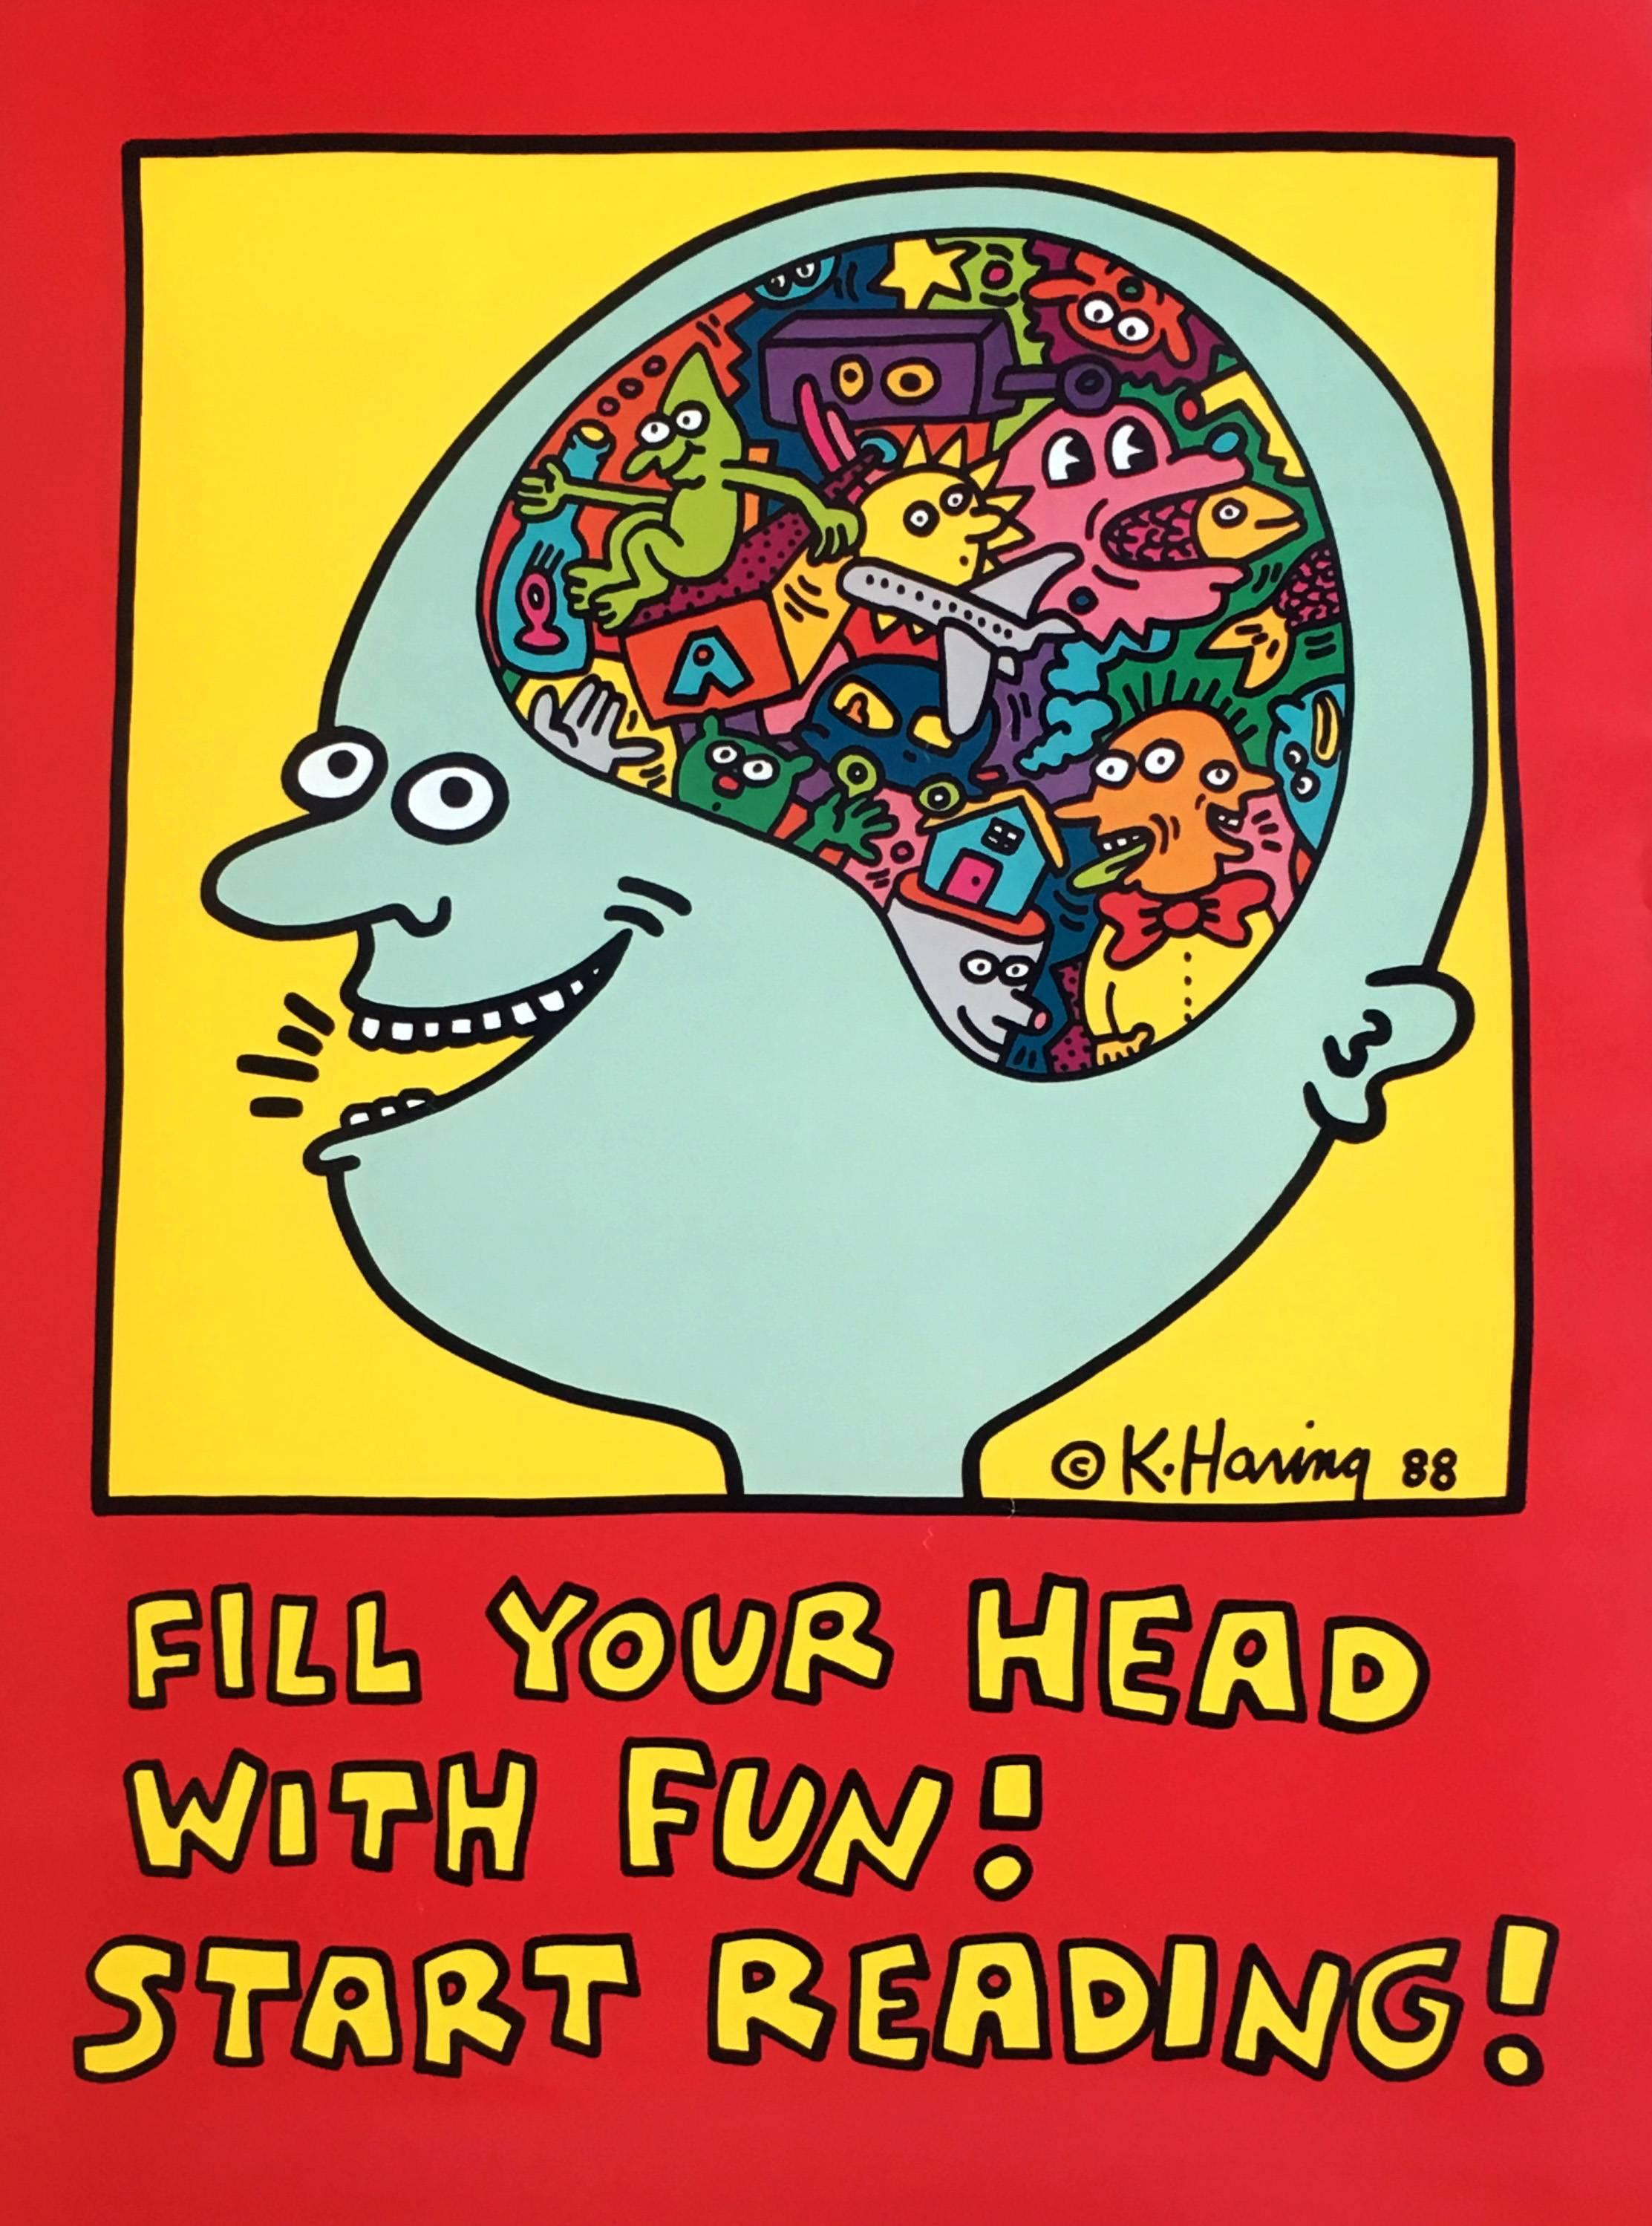 Keith Haring, remplissez votre tête de plaisir ! Commencez à lire ! 1988
Affiche originale vintage illustrée par Keith Haring, produite pour le système de la bibliothèque publique de New York en 1988 afin de promouvoir l'alphabétisation. Première